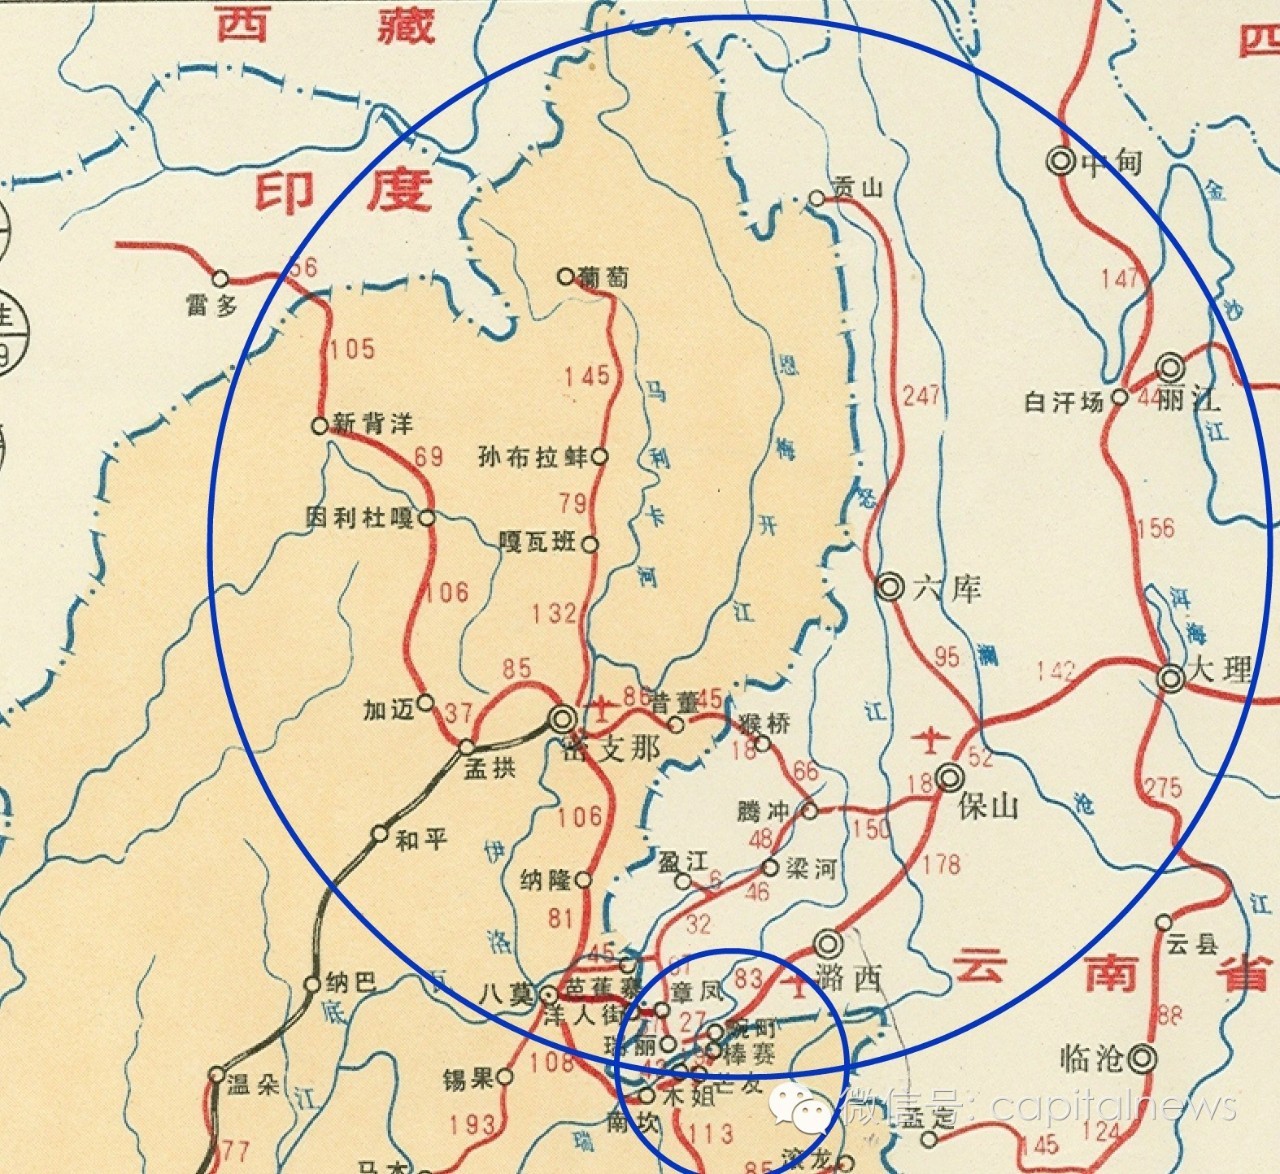 大家看,此次缅北战火,区域大致集中在上图的蓝色小圈附近,主要包括棒